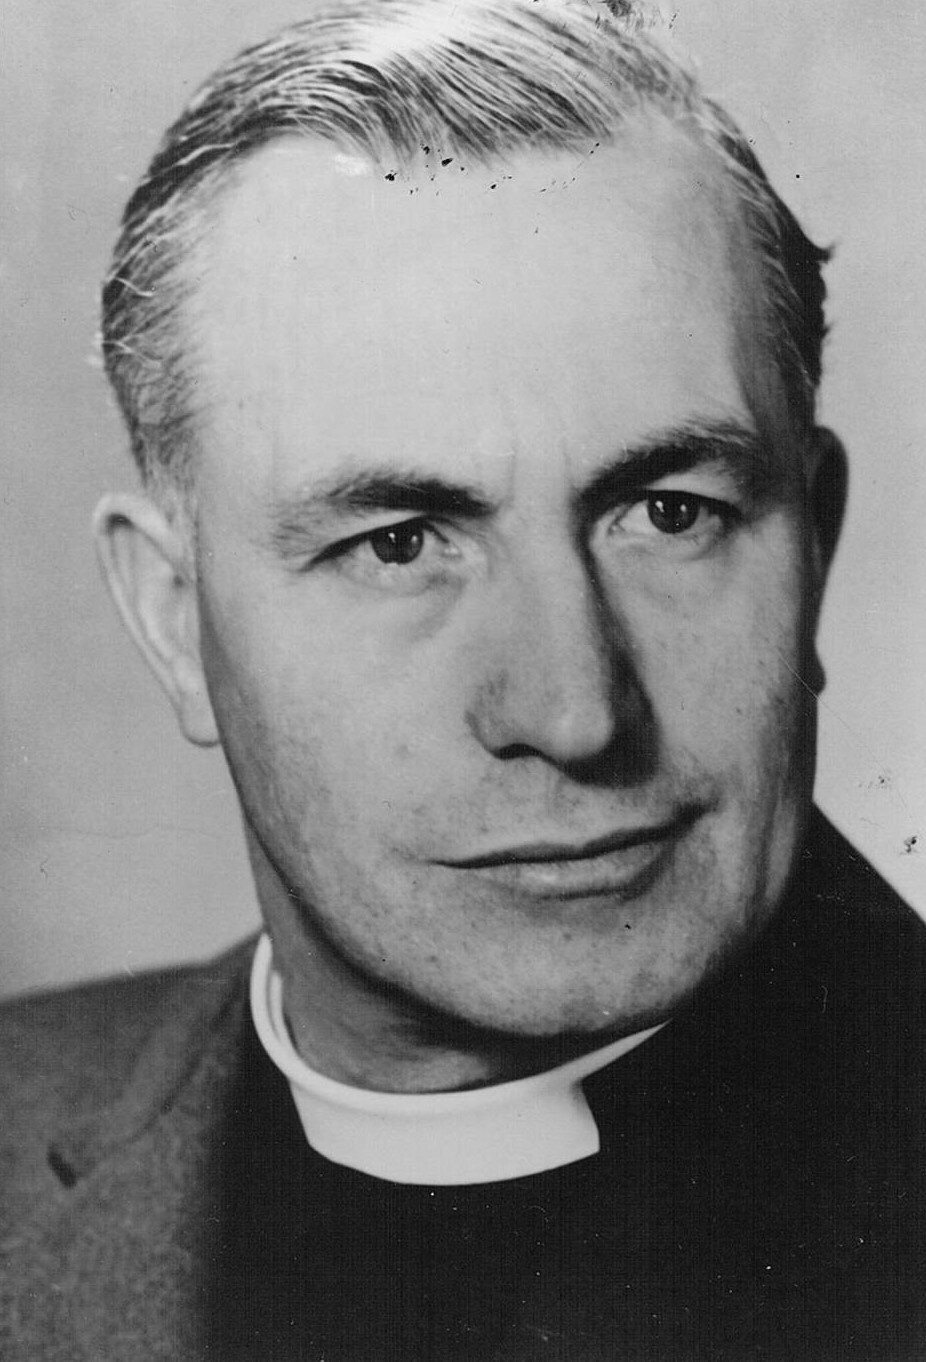 Rev. A. E. Jones, Minister, 1955-1957